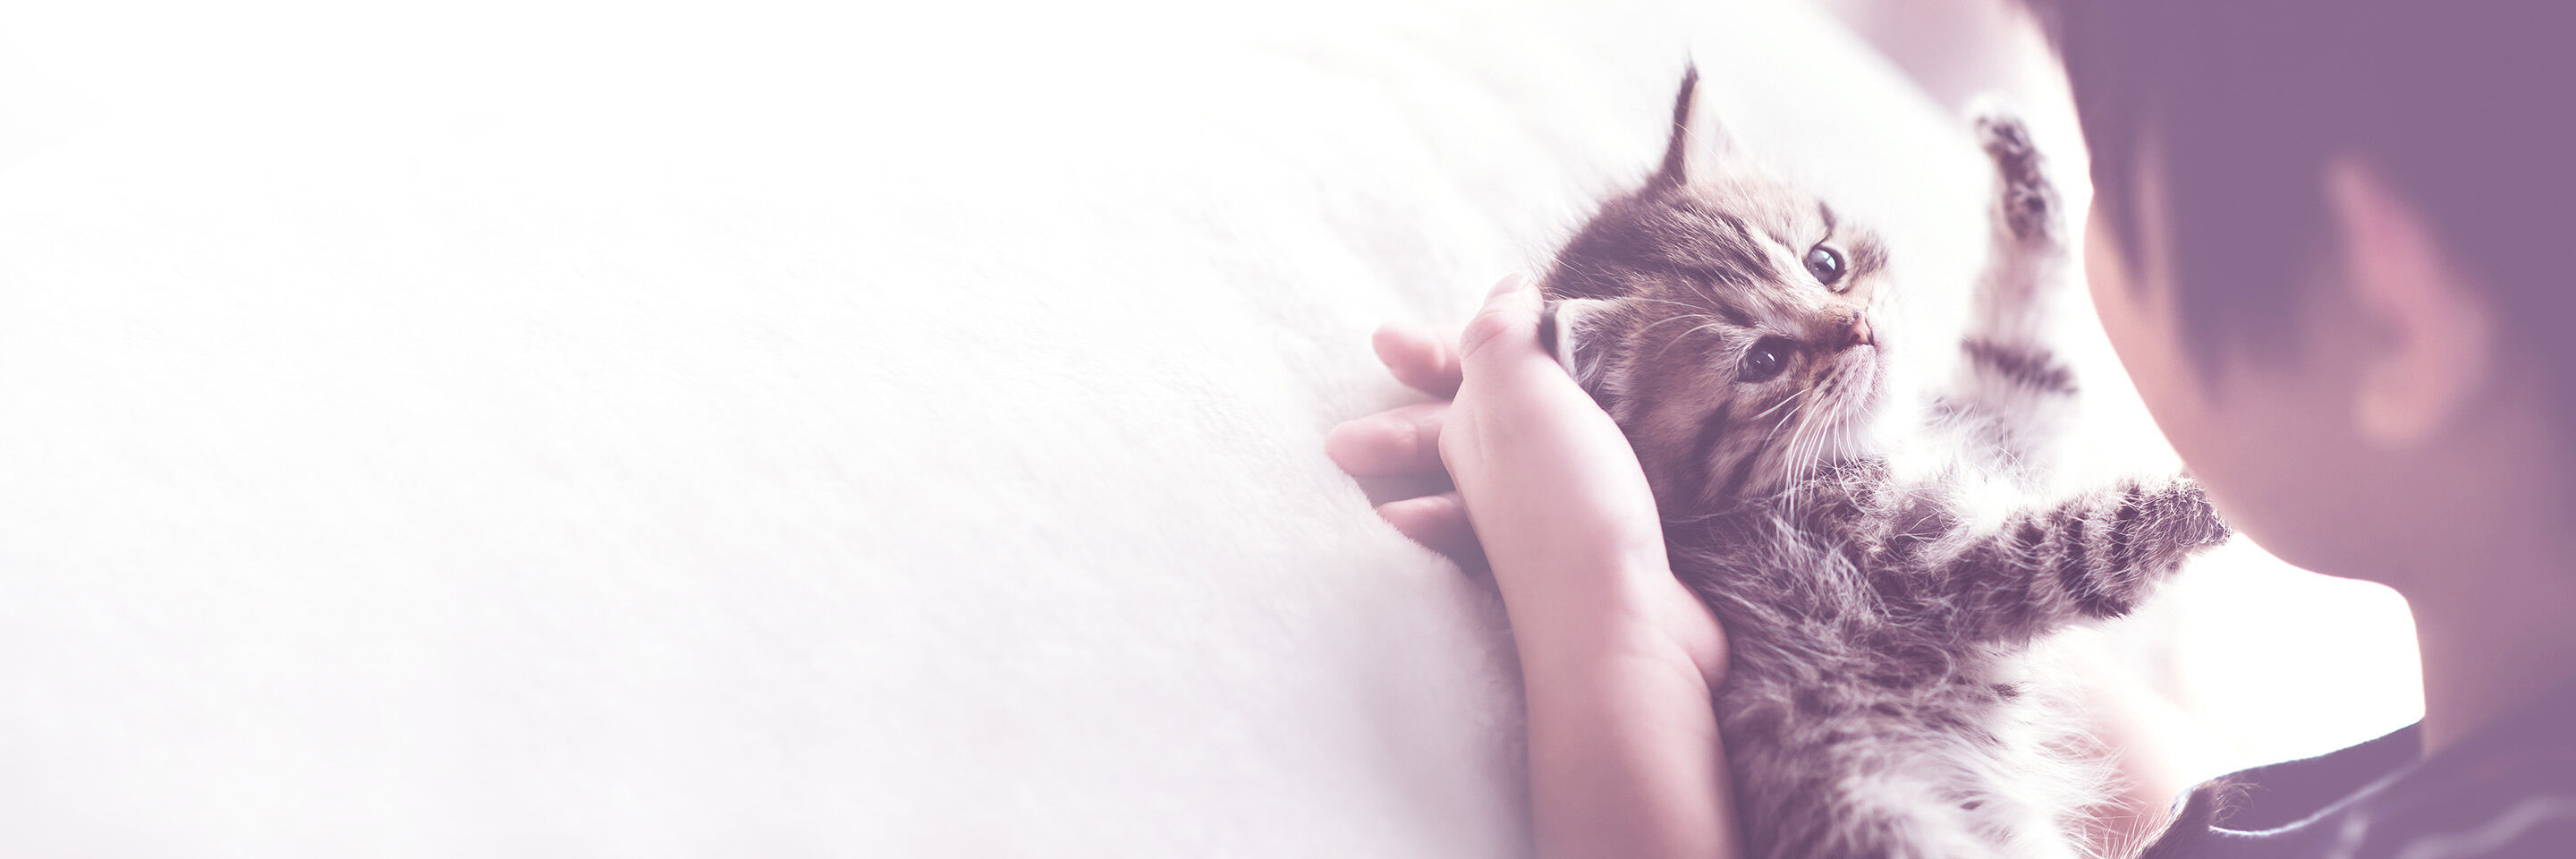 Babykatzen liegt in den Händen eines Kindes.